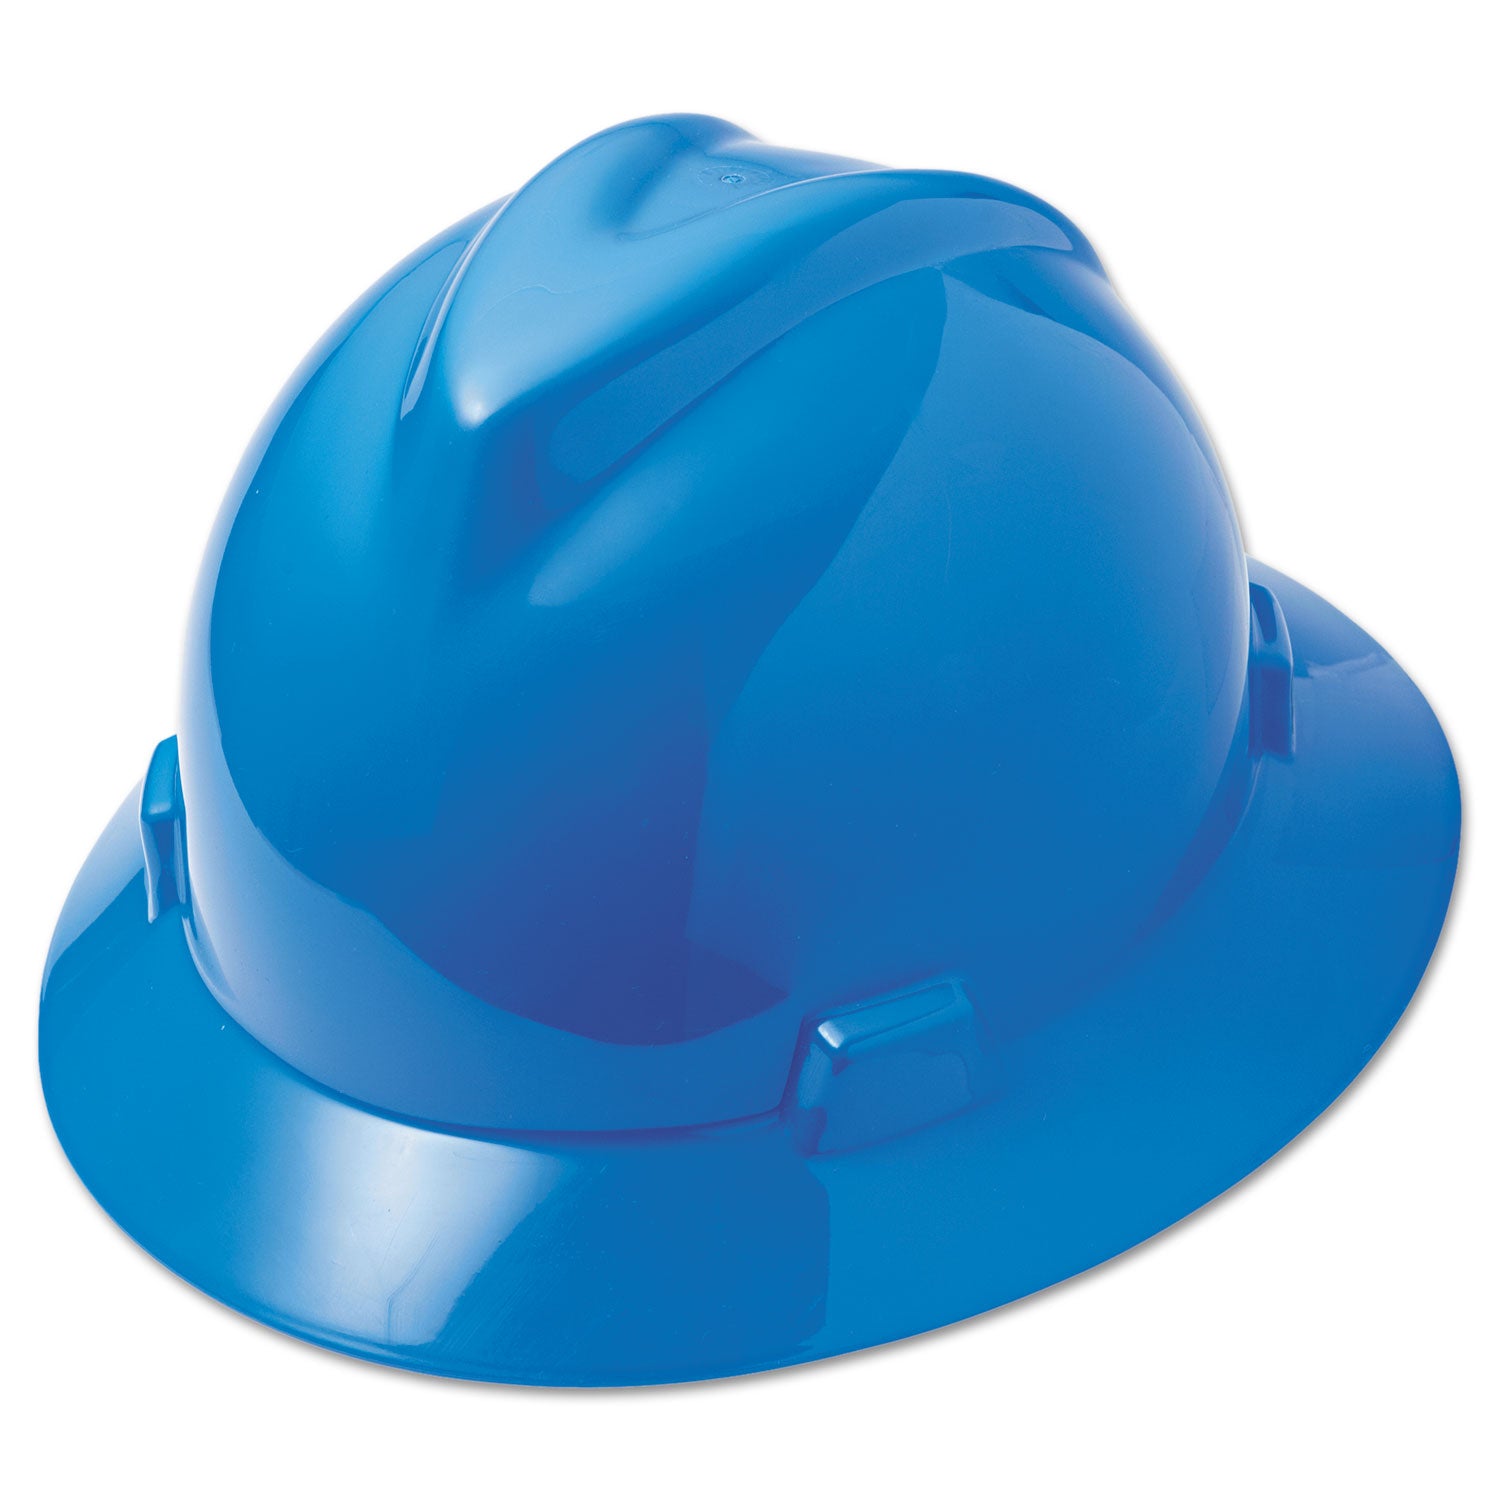 V-Gard Full-Brim Hard Hats, Ratchet Suspension, Size 6.5 to 8, Blue - 